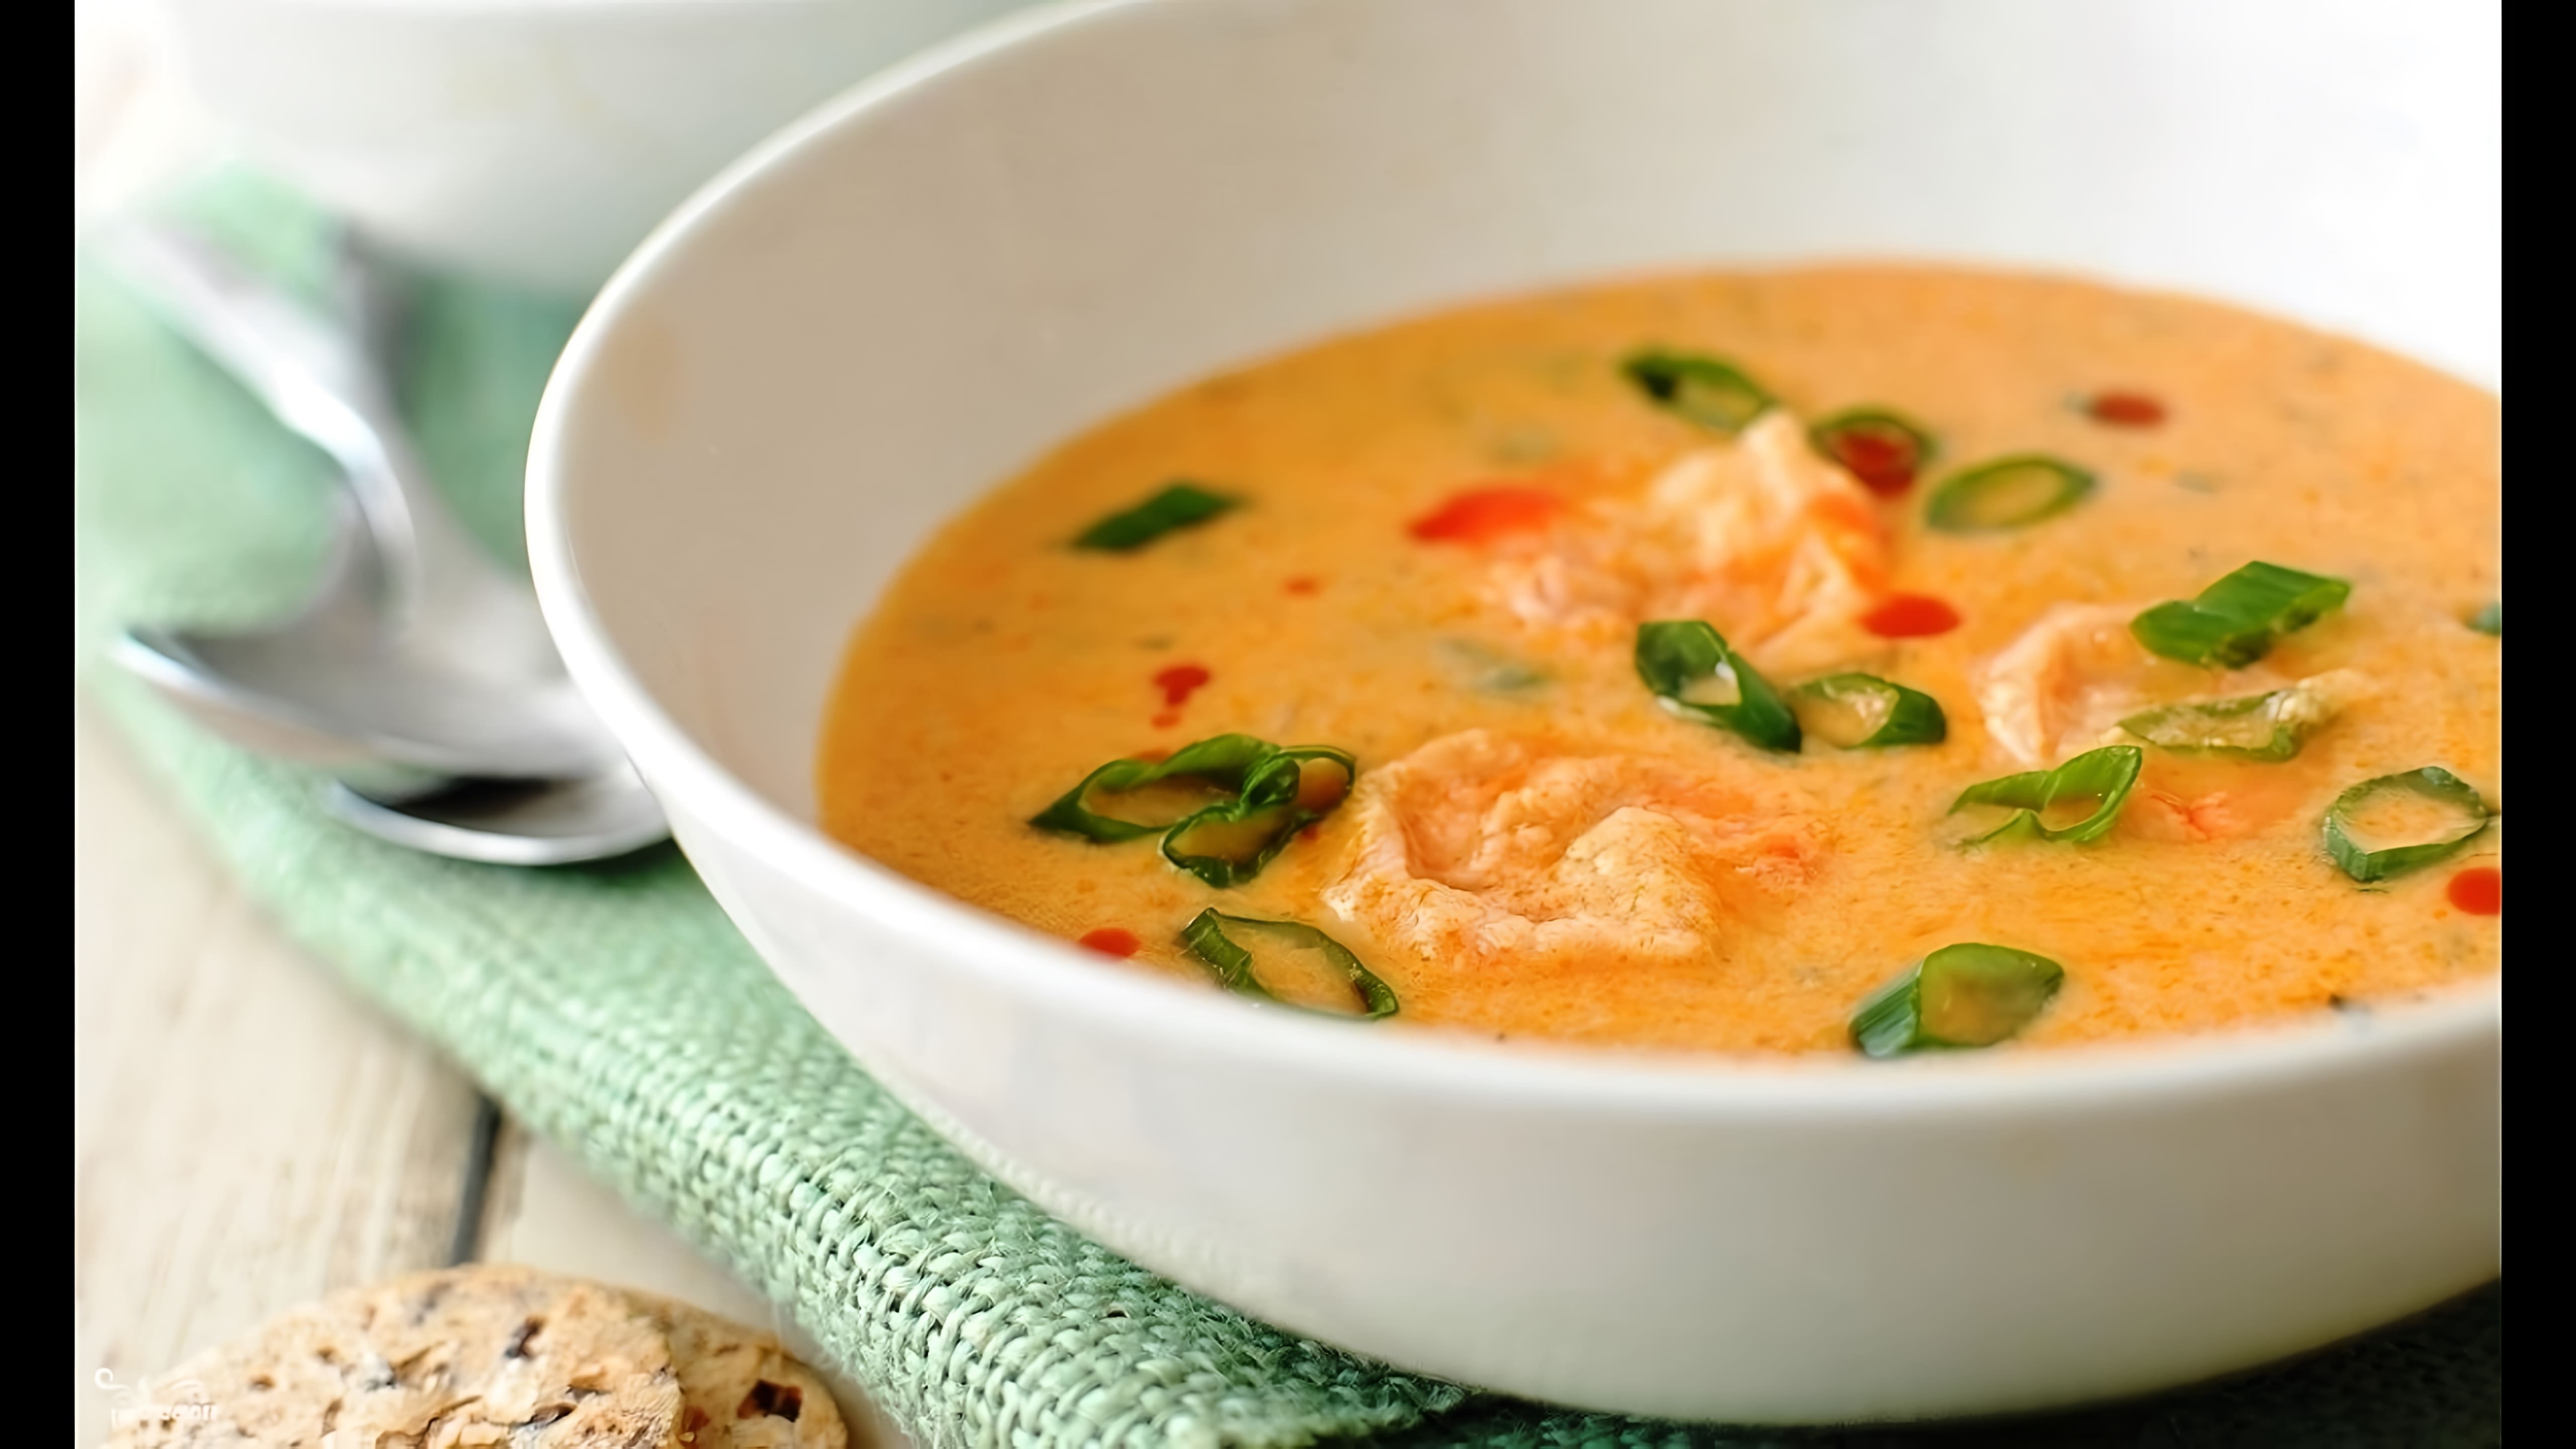 Сырный суп с креветками - это вкусное и питательное блюдо, которое можно приготовить в домашних условиях